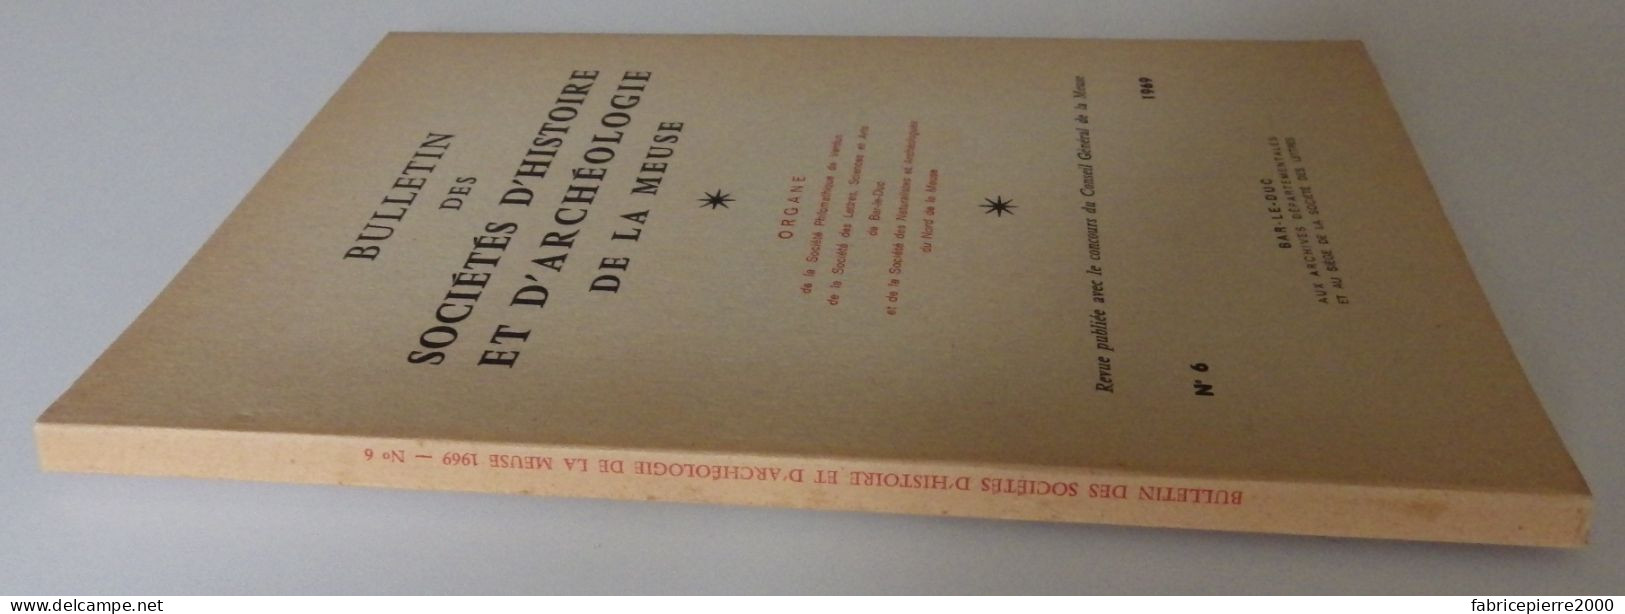 BULLETIN DES SOCIETES D'HISTOIRE ET D'ARCHEOLOGIE DE LA MEUSE N°6 1969 EXCELLENT ETAT Bar-le-Duc Verdun Commercy Aimond - Lorraine - Vosges